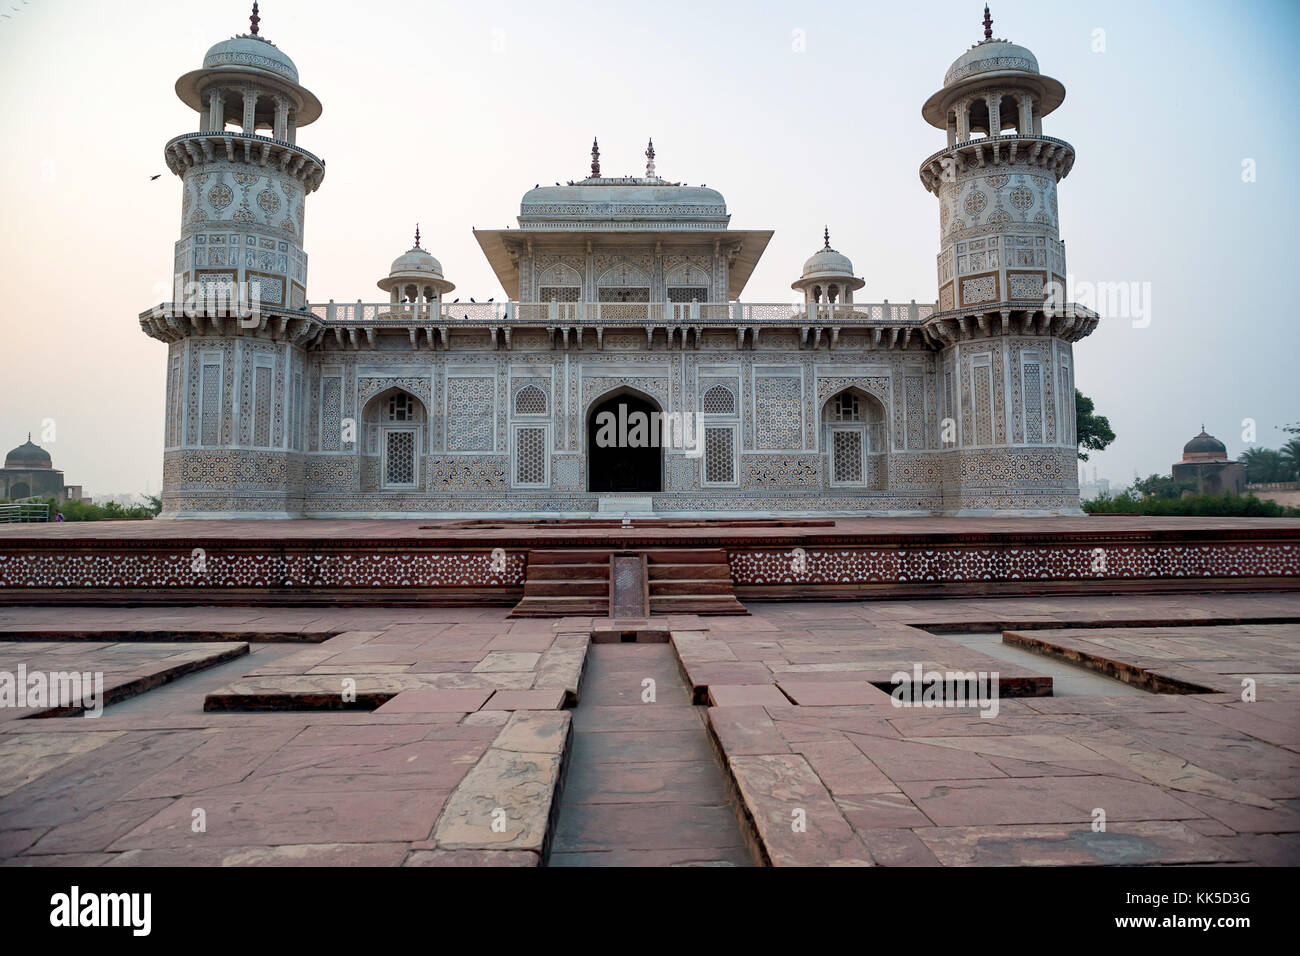 Itimad-ud-Daulah or Baby Taj in Agra, India Stock Photo - Alamy